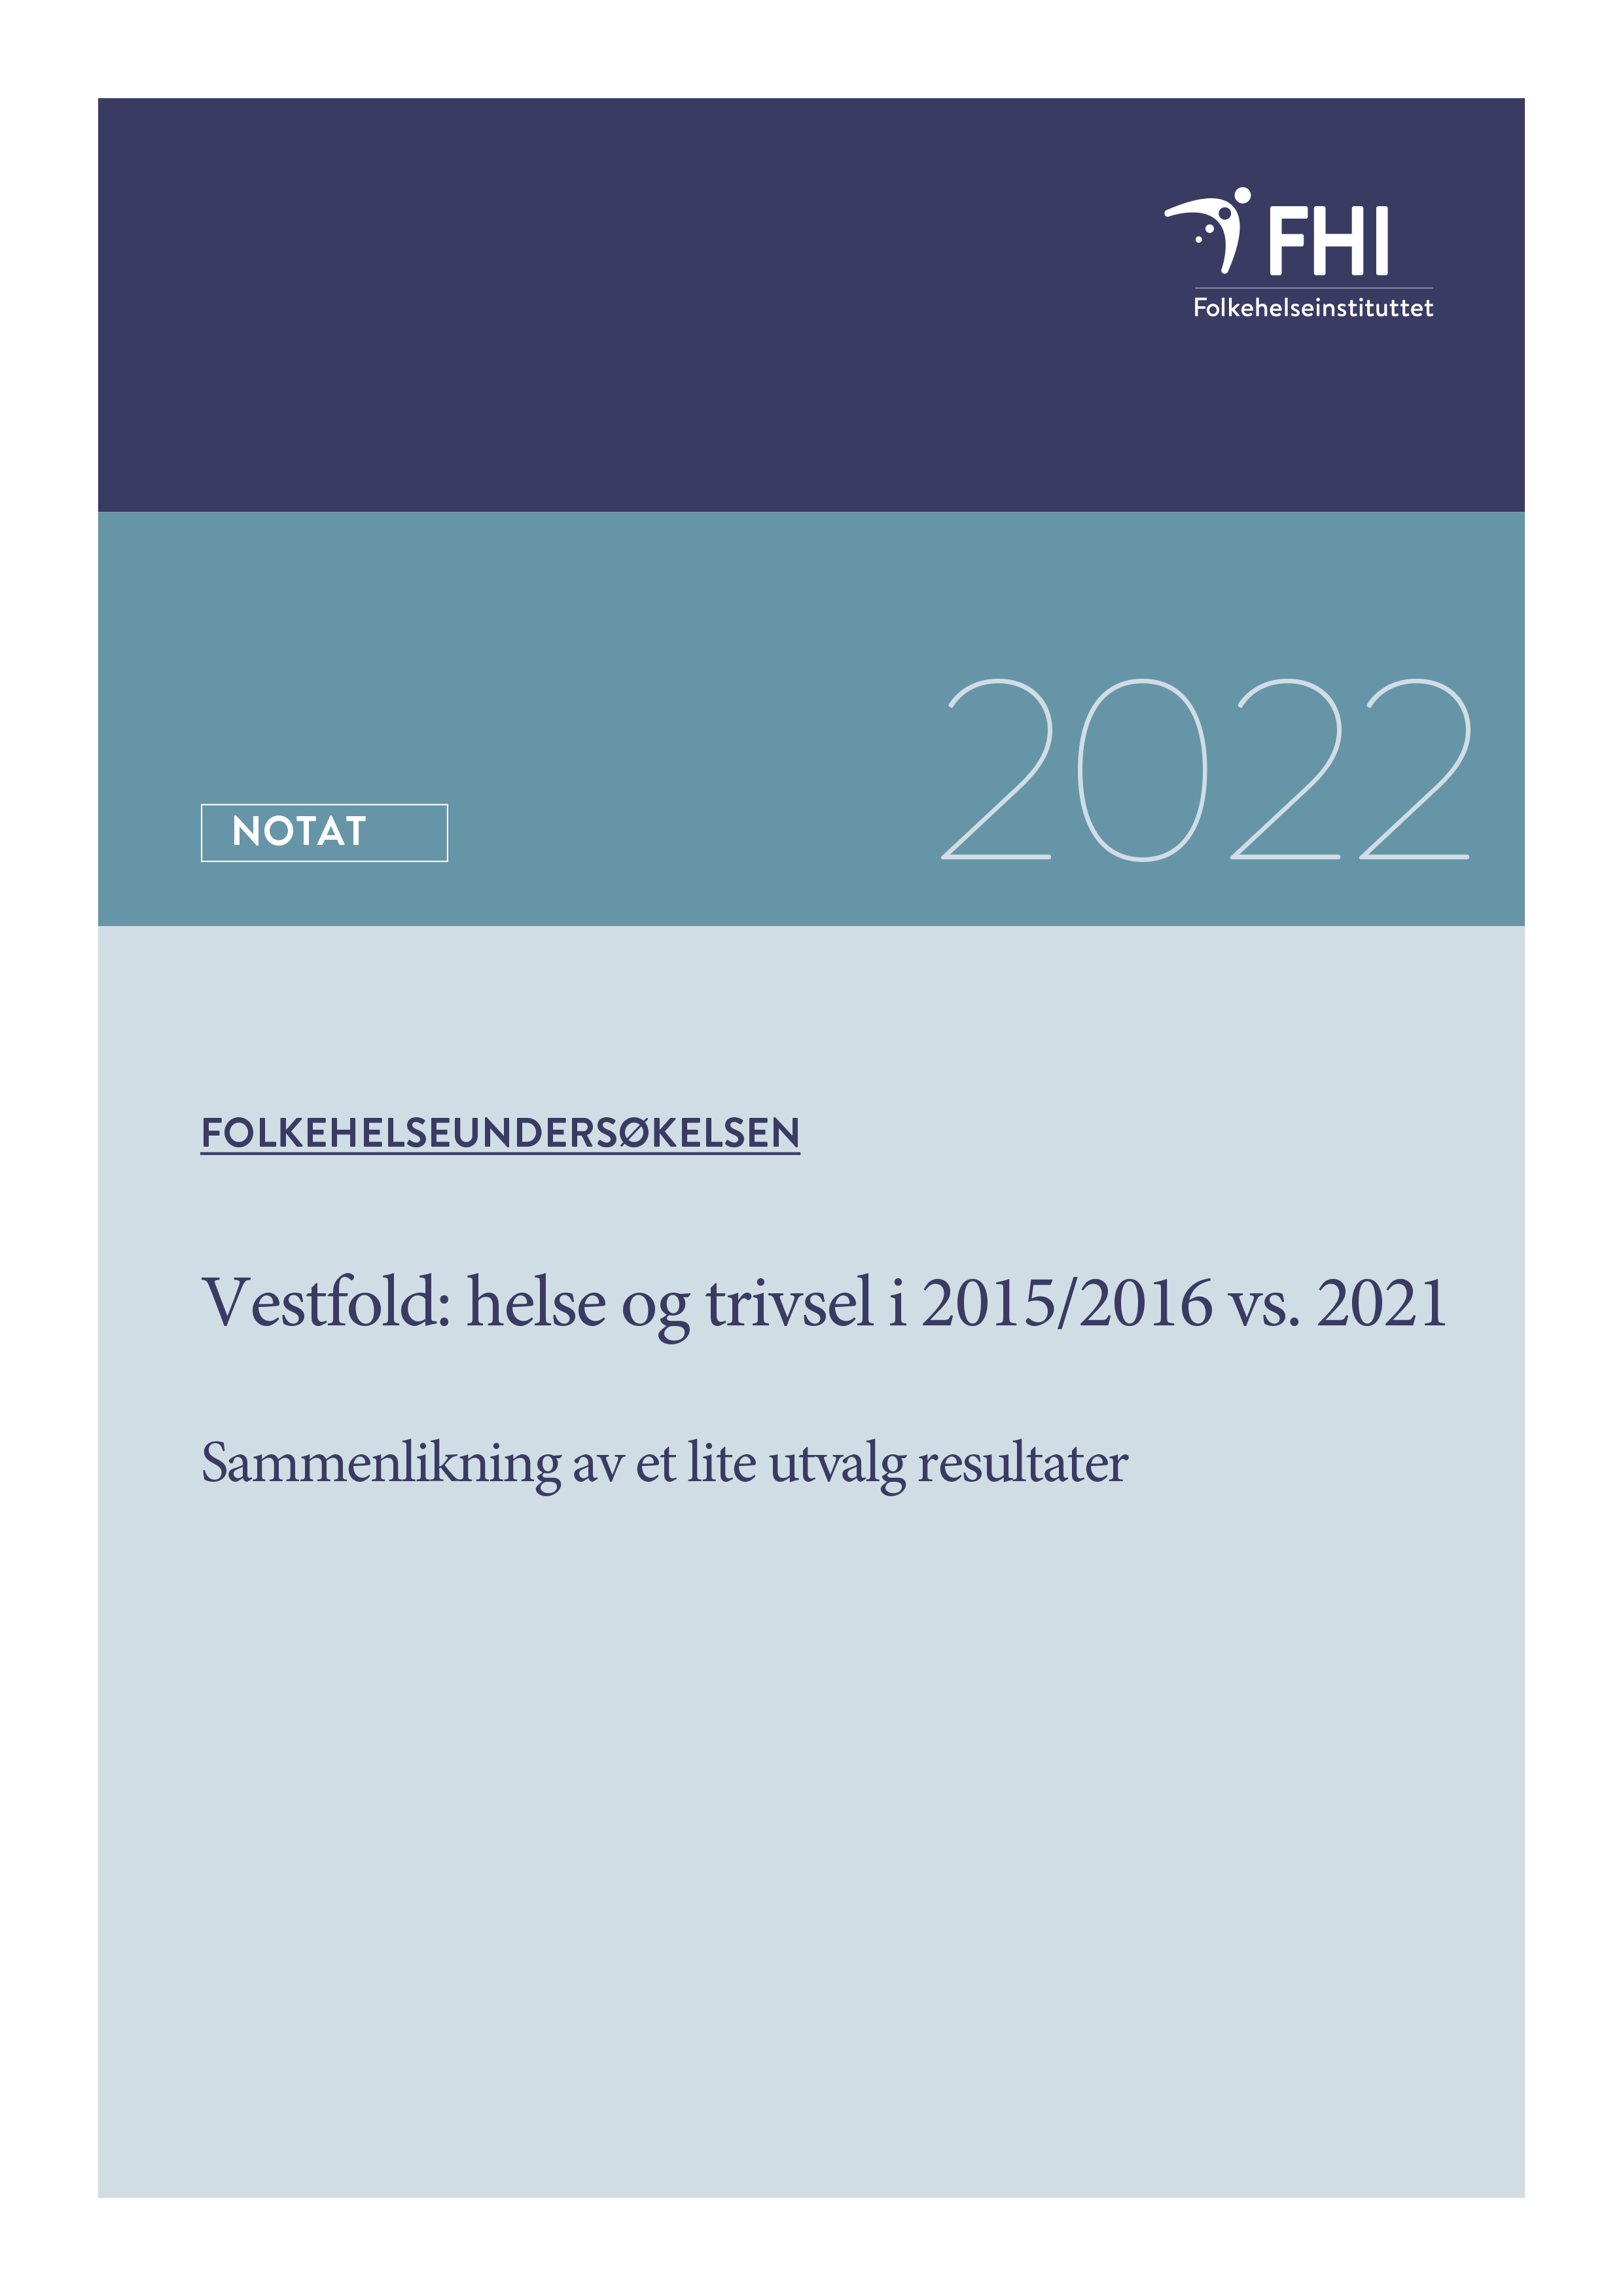 Folkehelseundersøkelsen  Helse og trivsel 2015-2016 vs 2021 i Vestfold-1.png